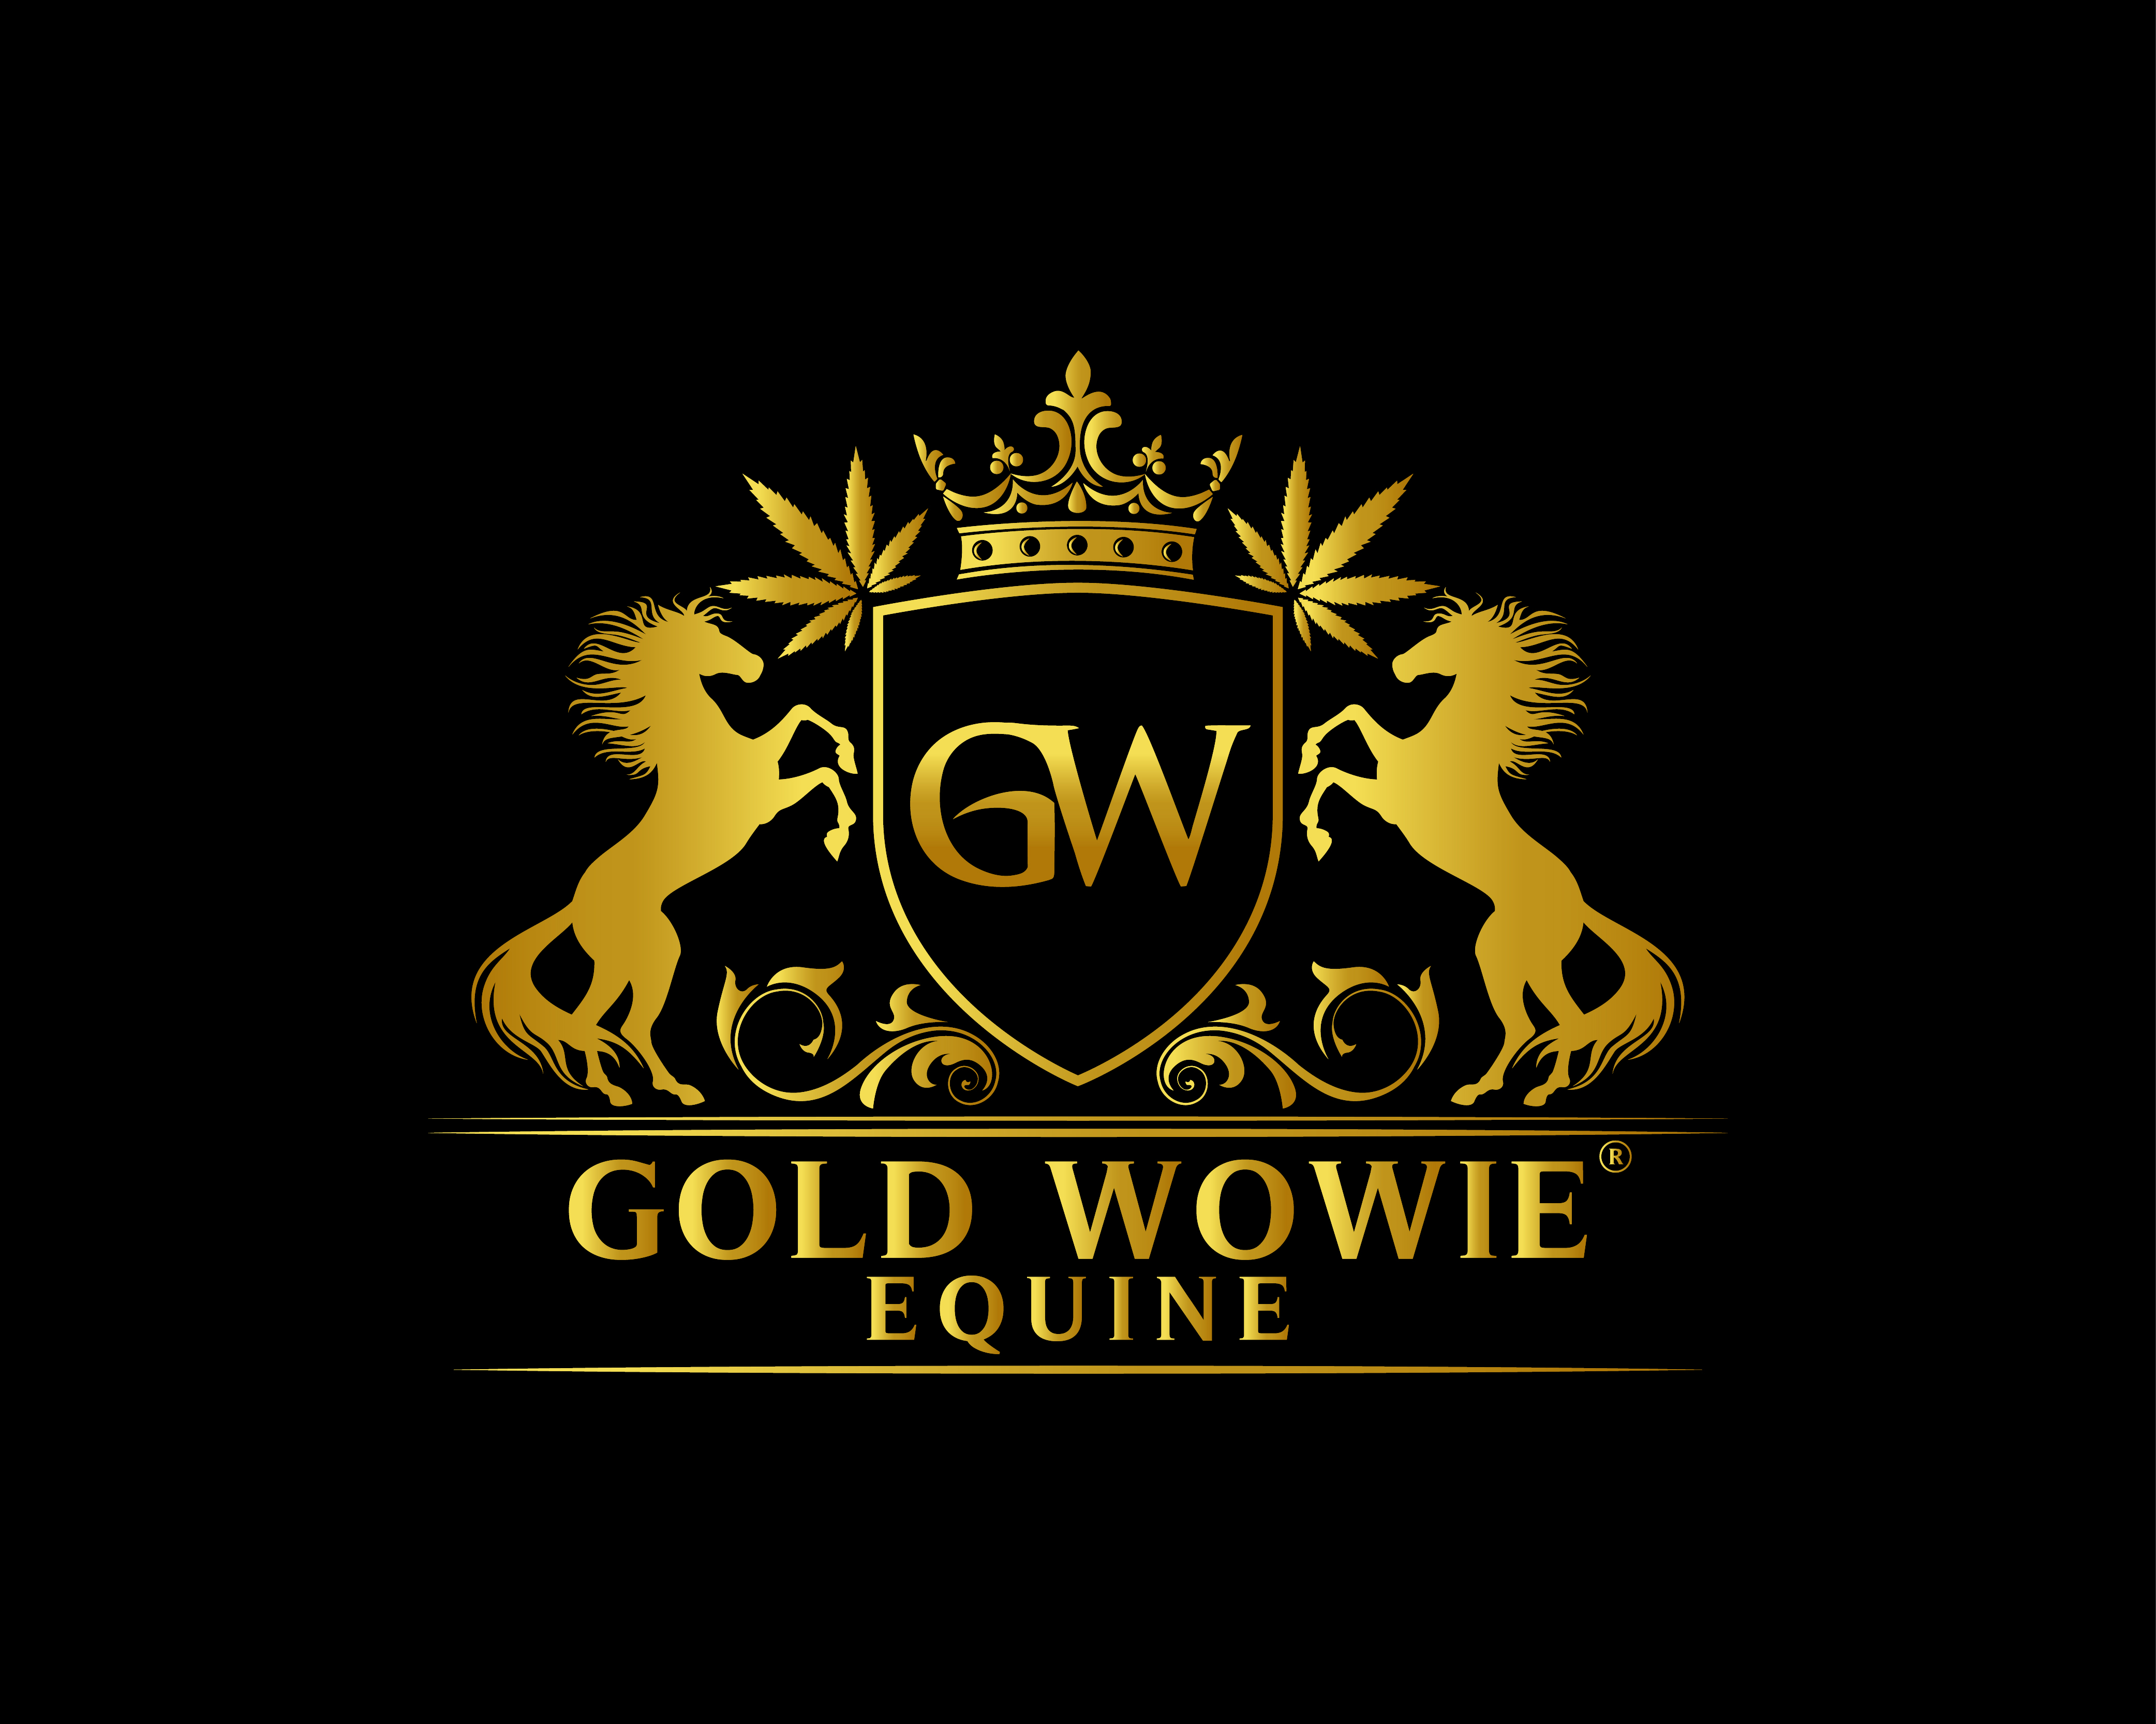 Golden Wowie Equine